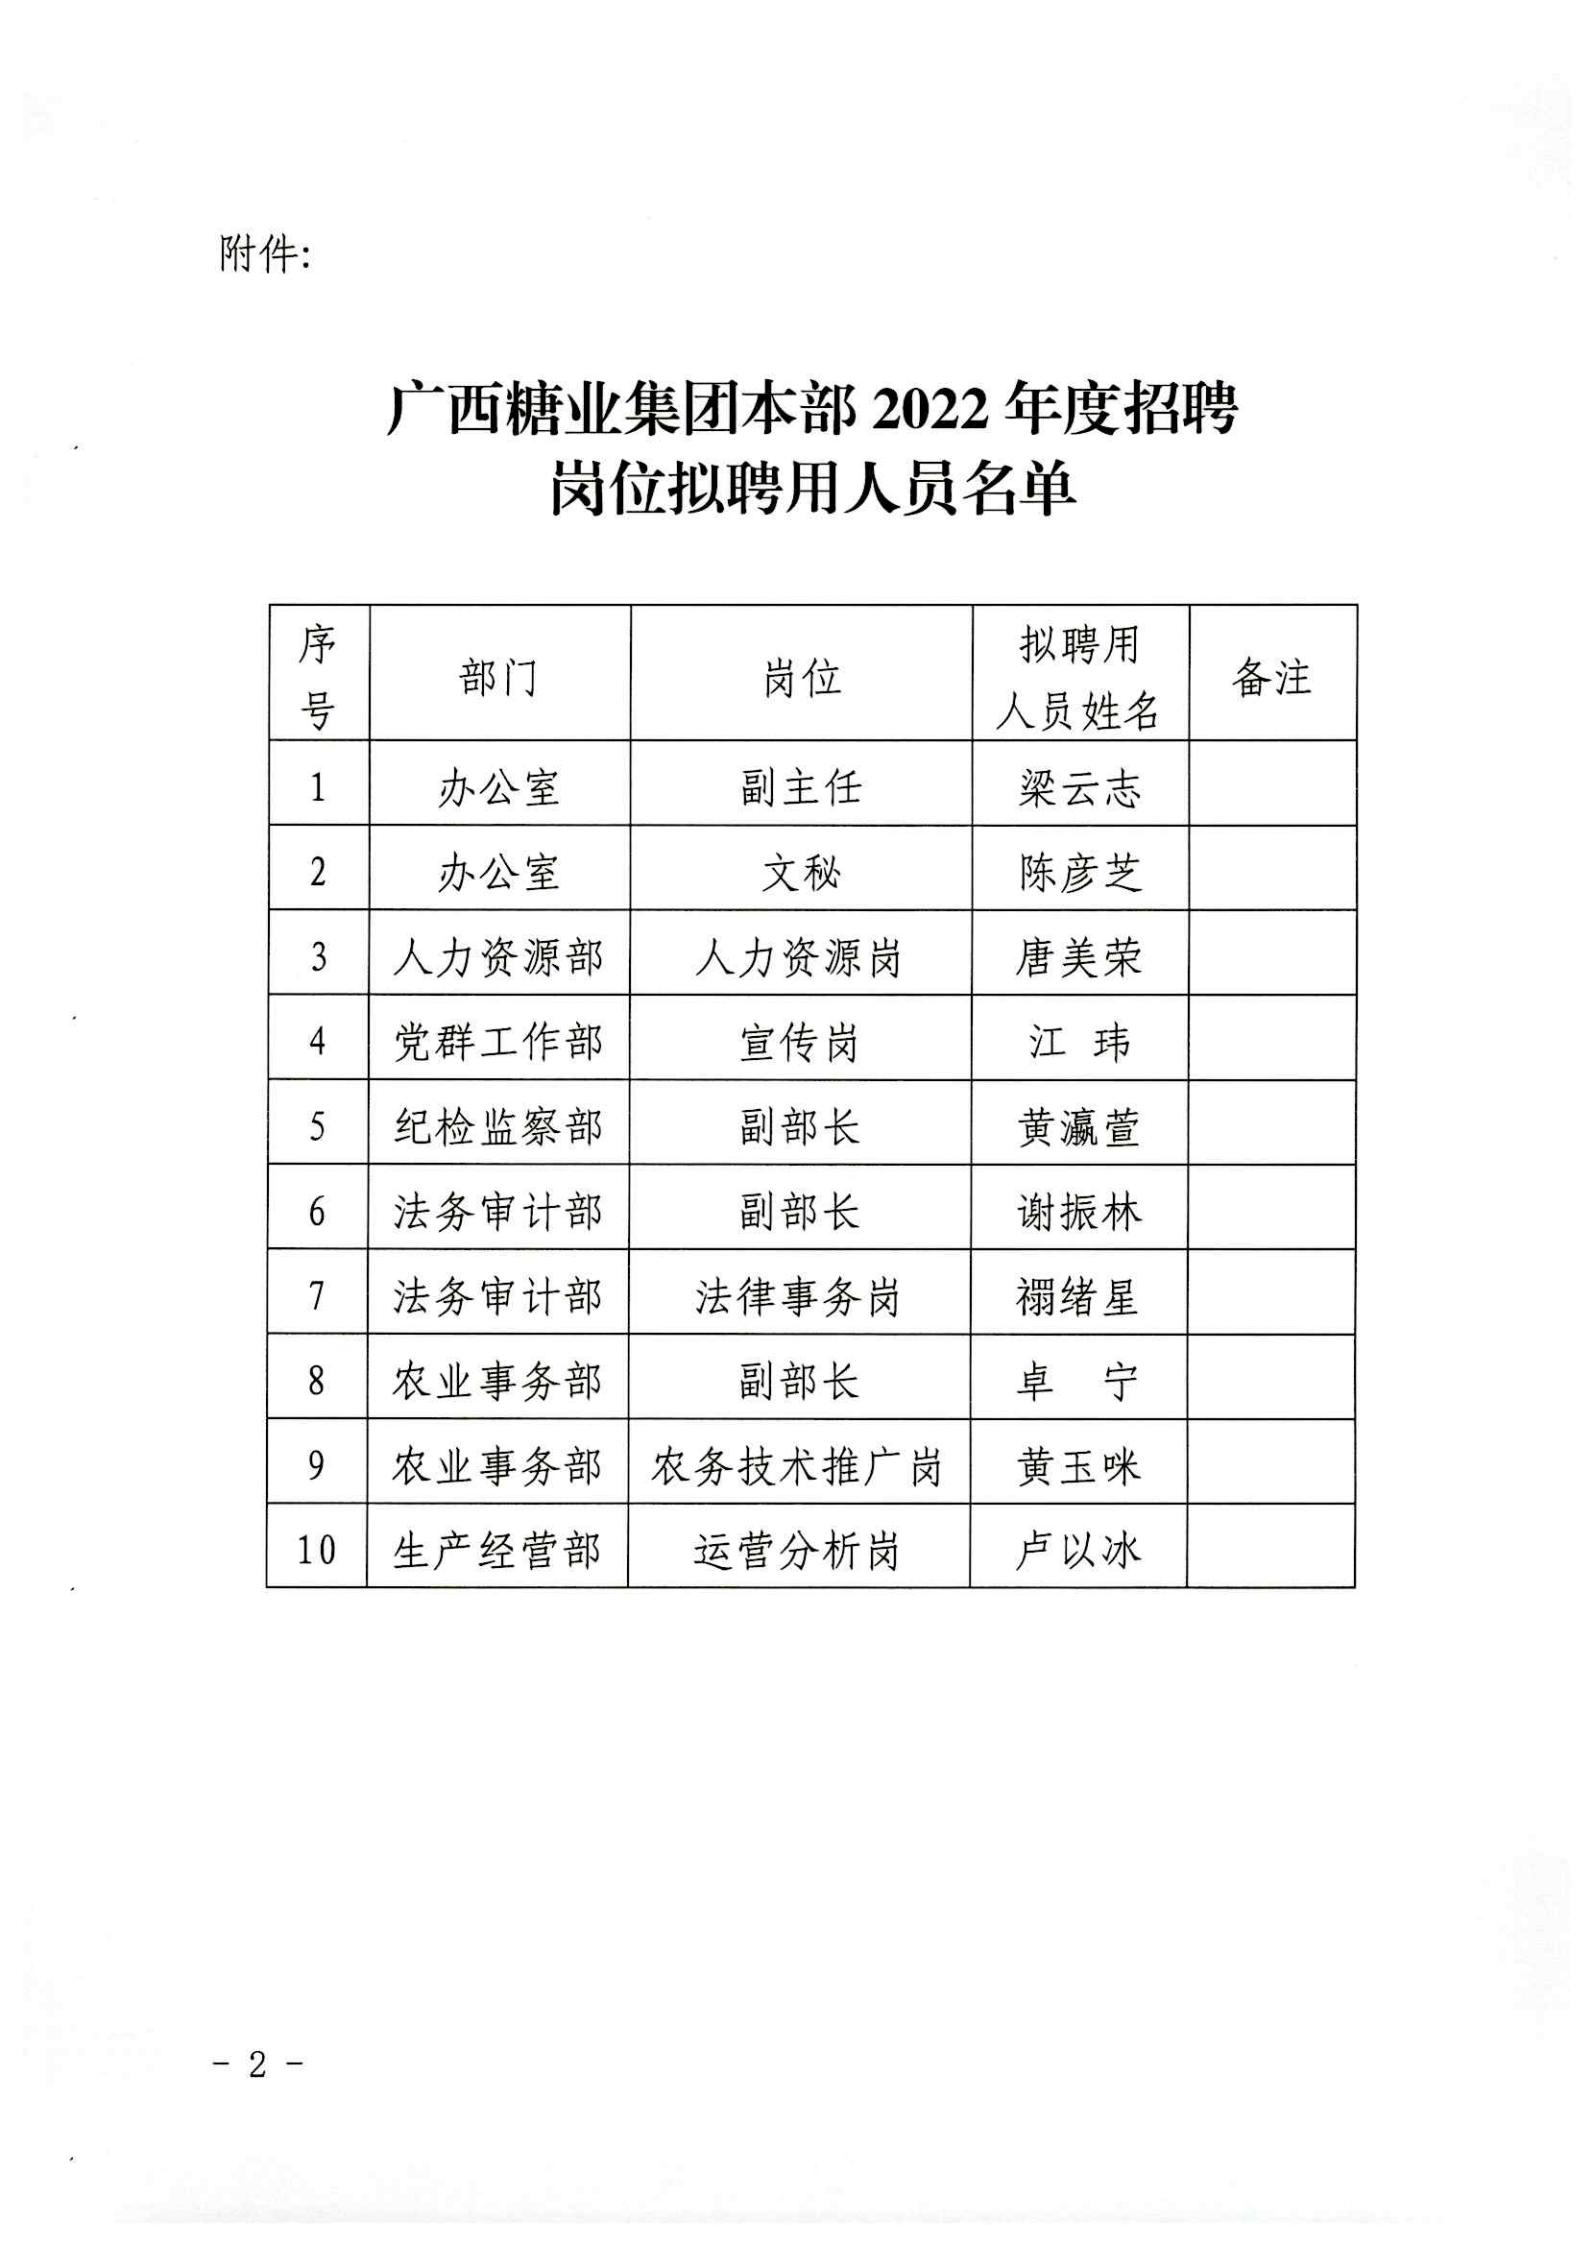 广西糖业集团本部2022年度招聘岗位拟聘用人员名单公示 (2)_02.jpg